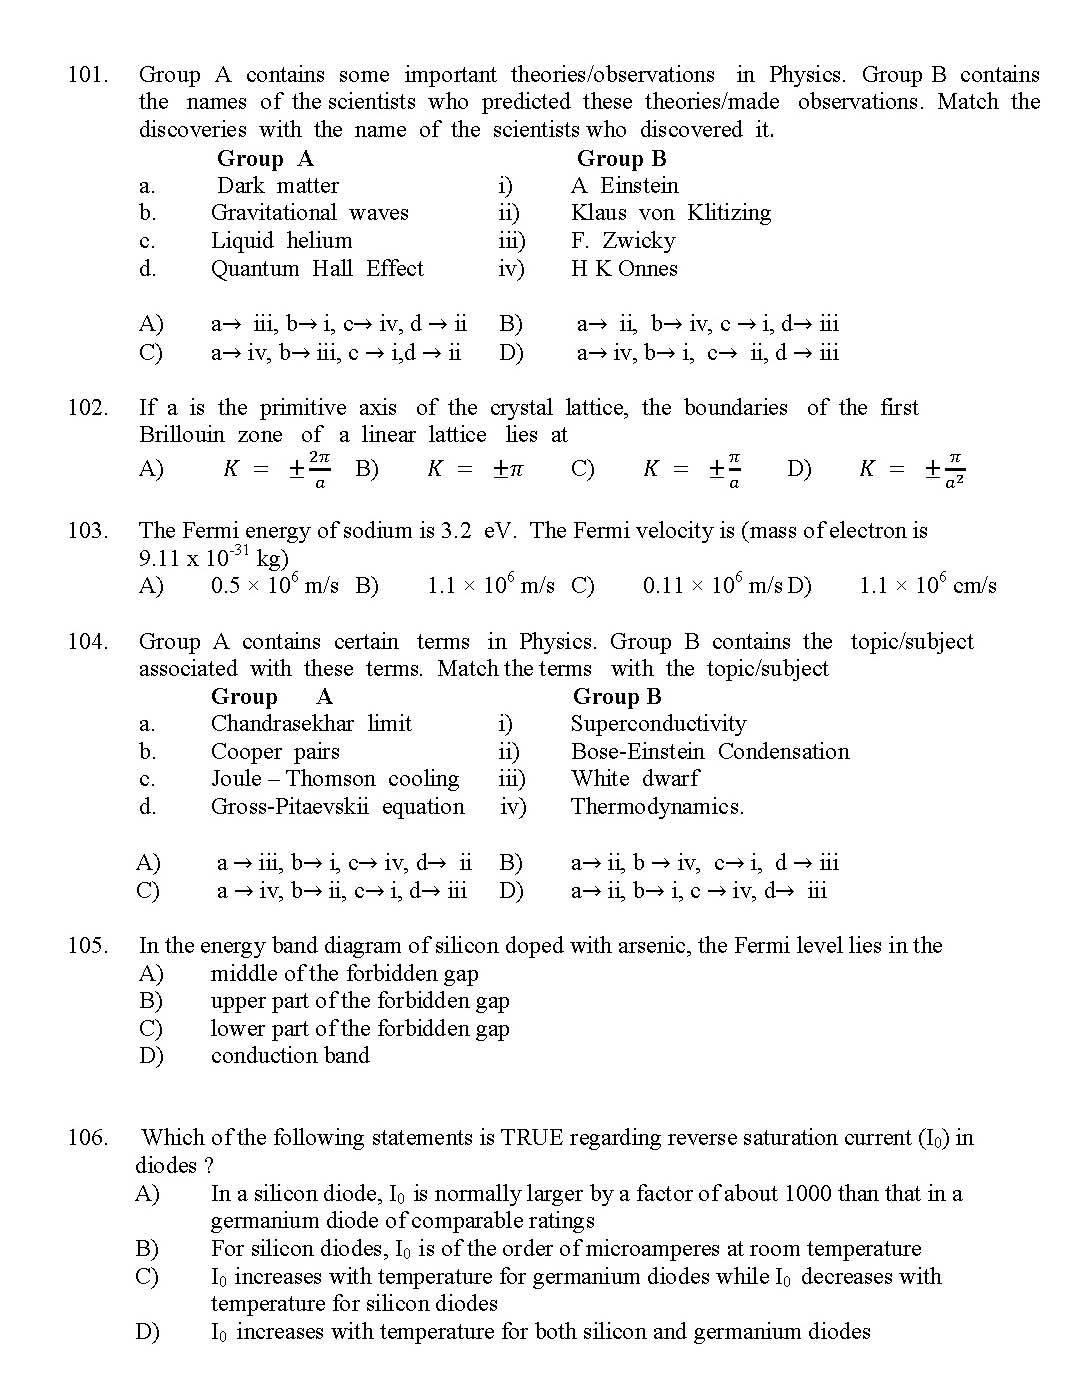 Kerala SET Physics Exam 2017 Question Code 17224 A 16